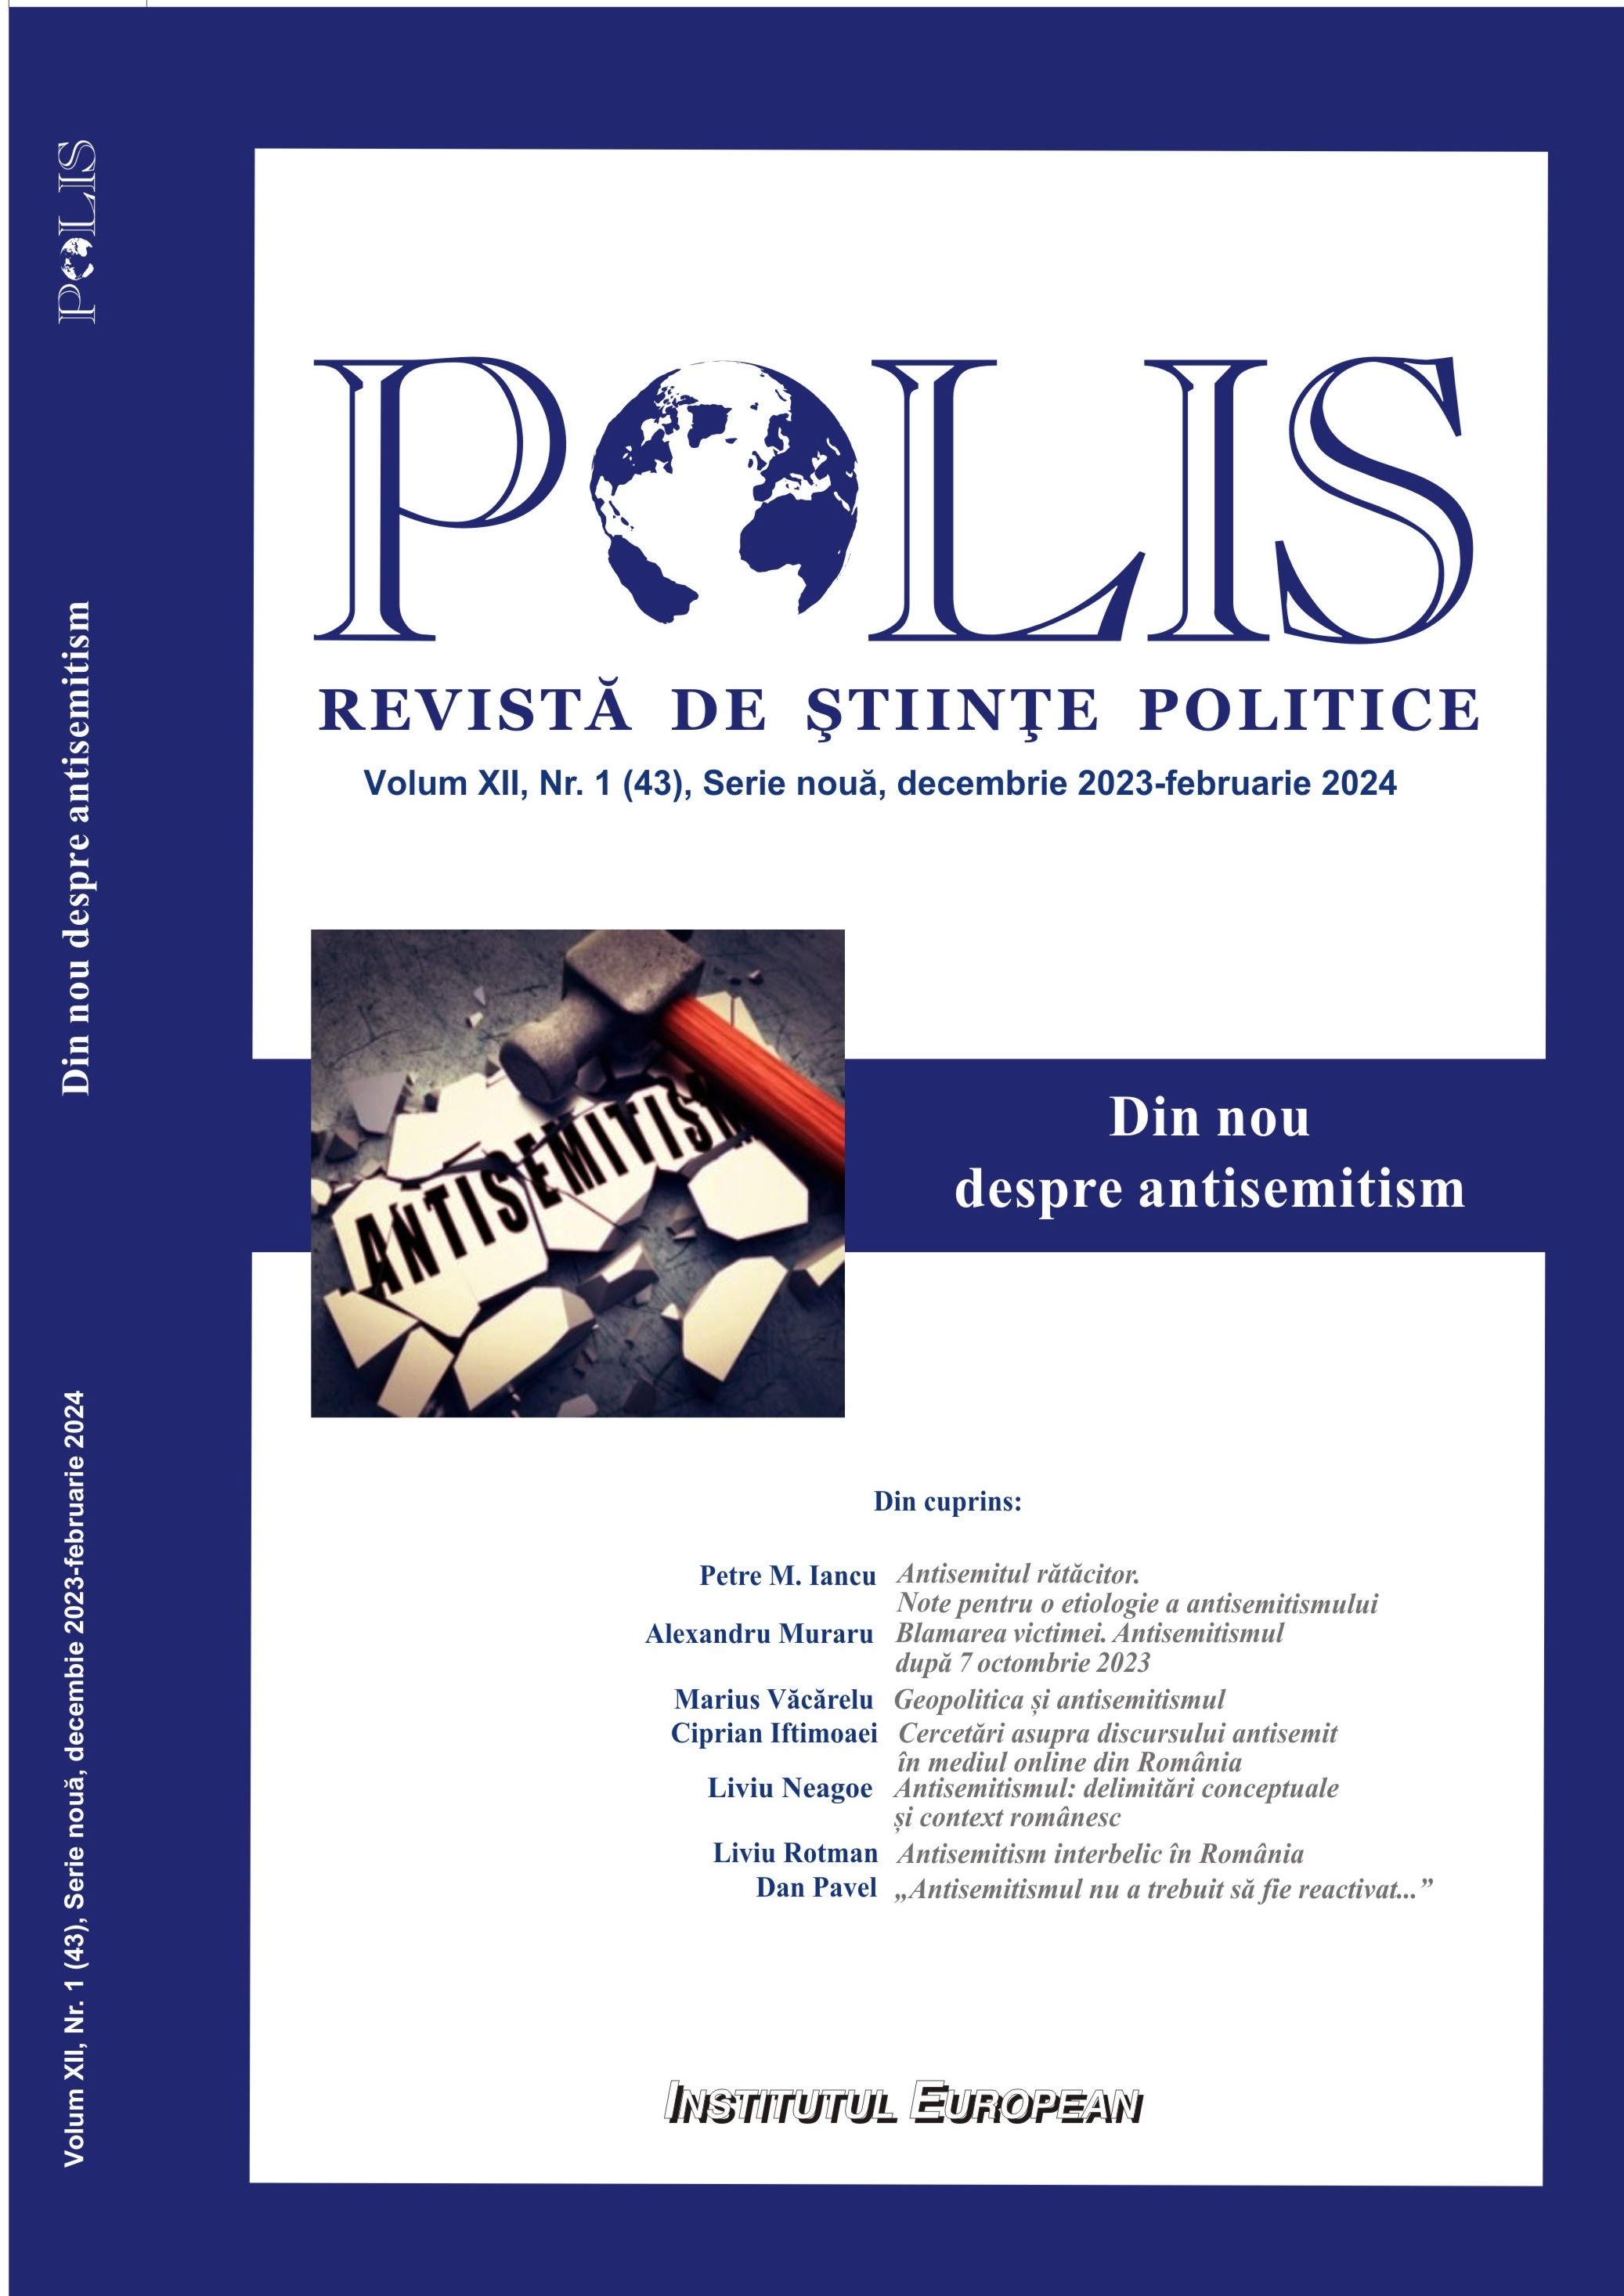 Globalizarea ipocriziei. Pentru o abordare umanistă a eticii memoriei,
Editura Polirom, Iași, 2023, 463 Cover Image